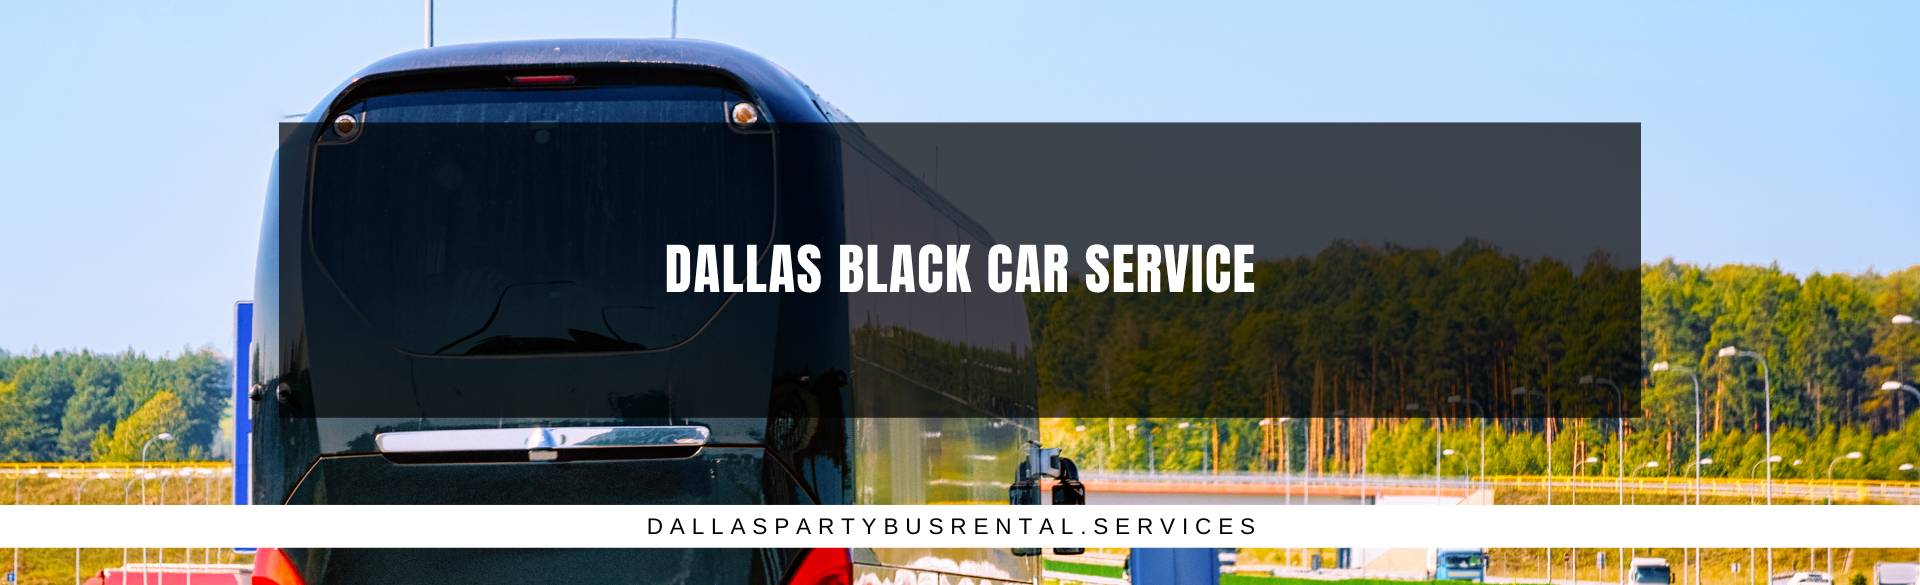 Dallas Black Car Service